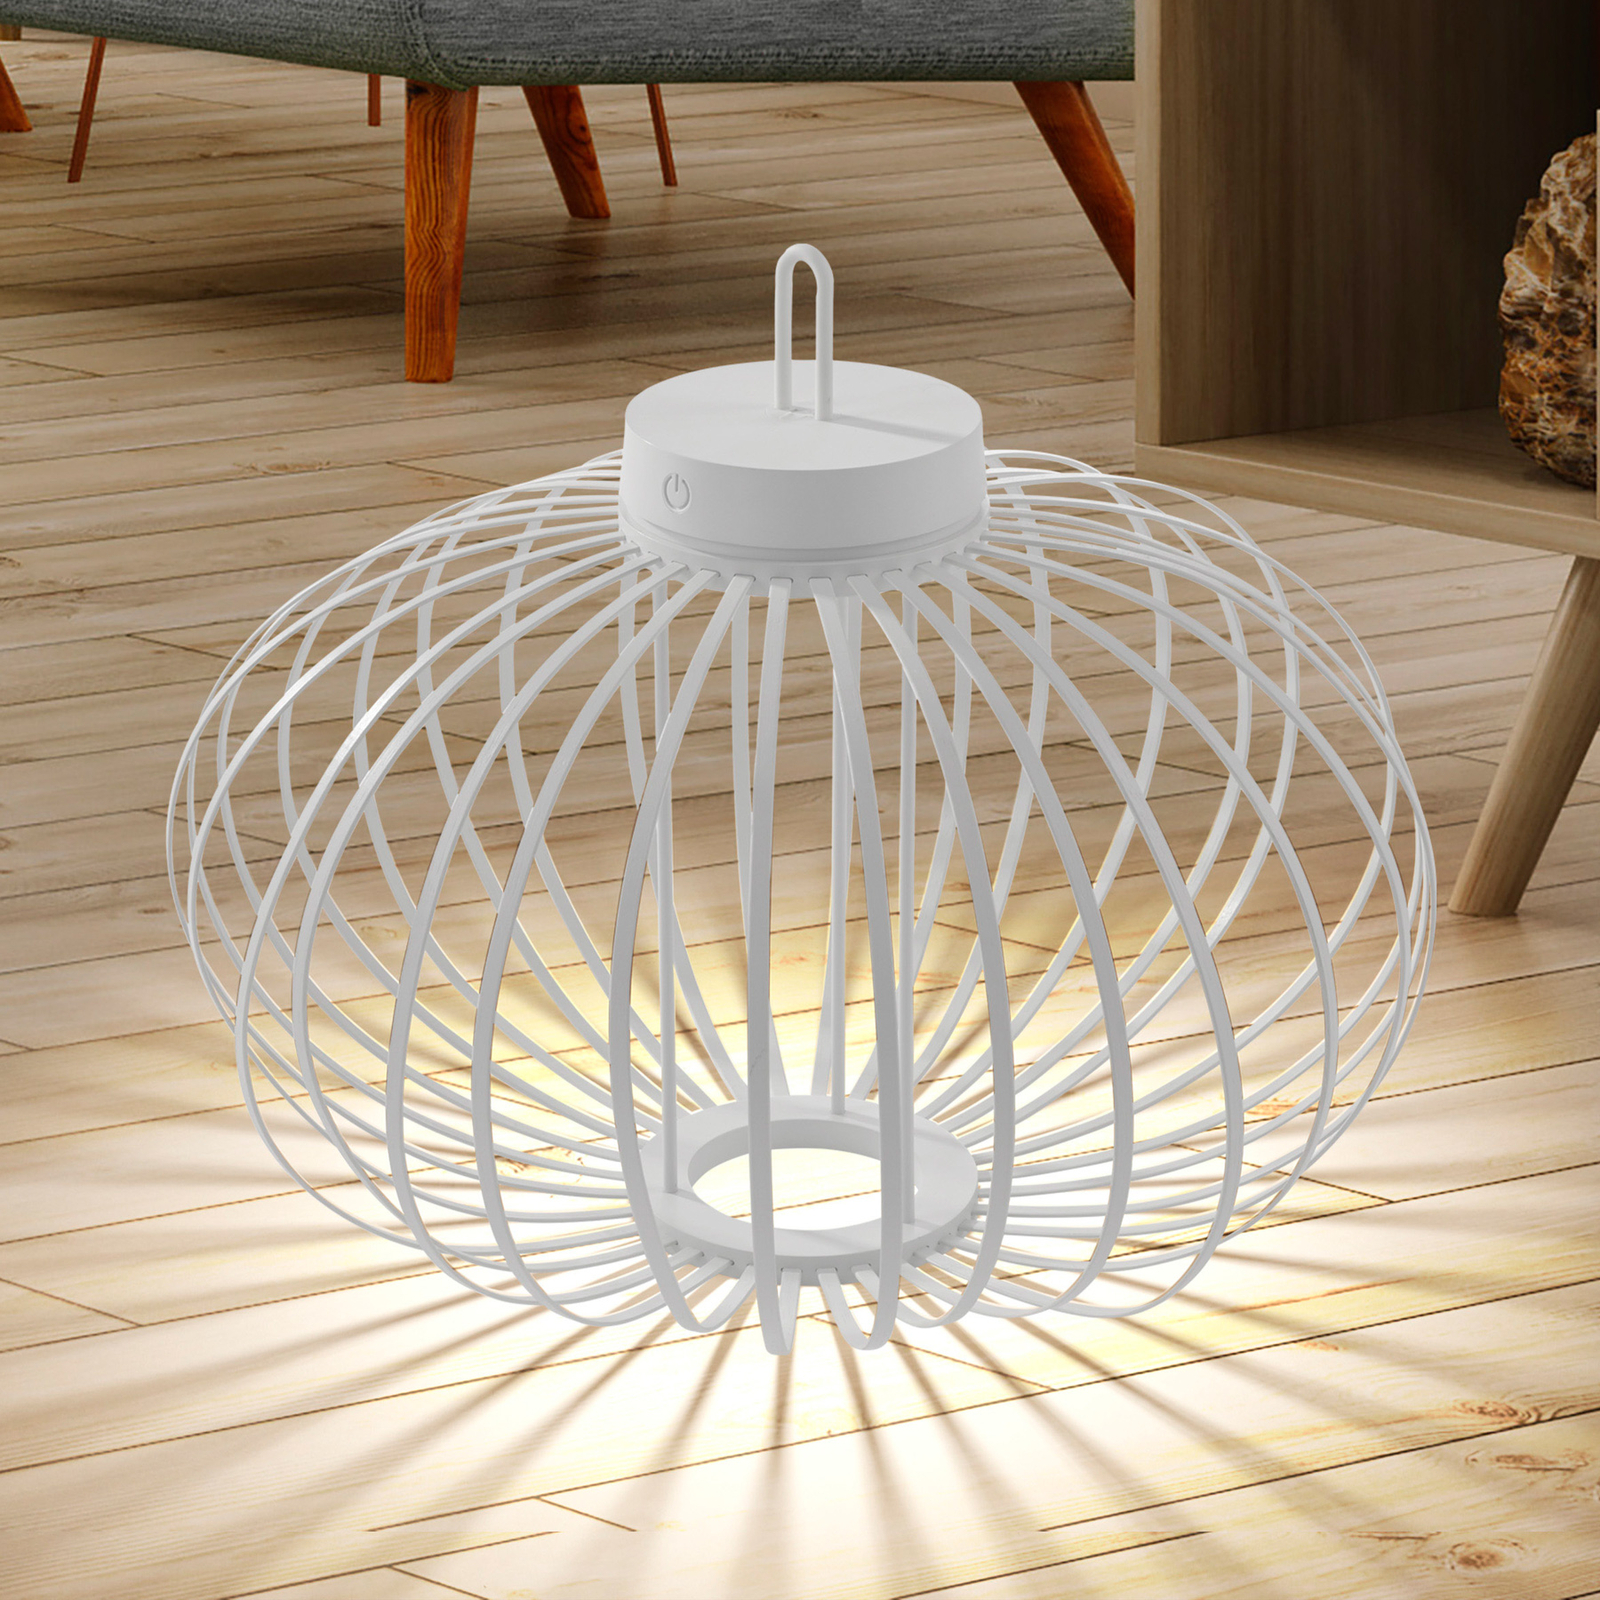 JUST LIGHT. Namizna svetilka Akuba LED za polnjenje, bela, 37 cm, bambus